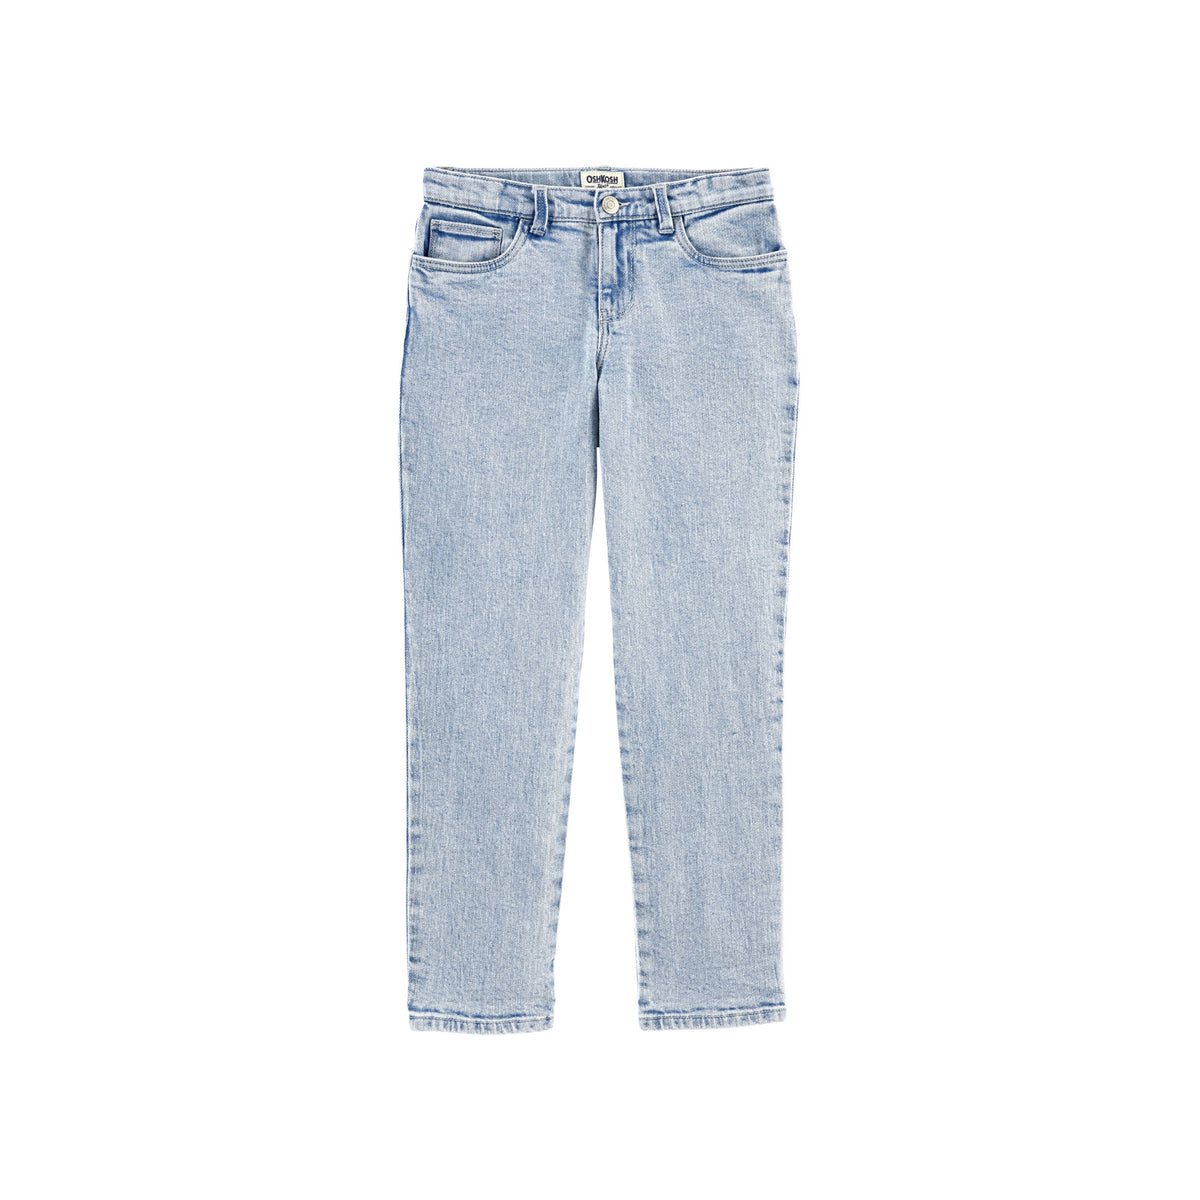 OshKosh light-colored denim trousers (5-8)